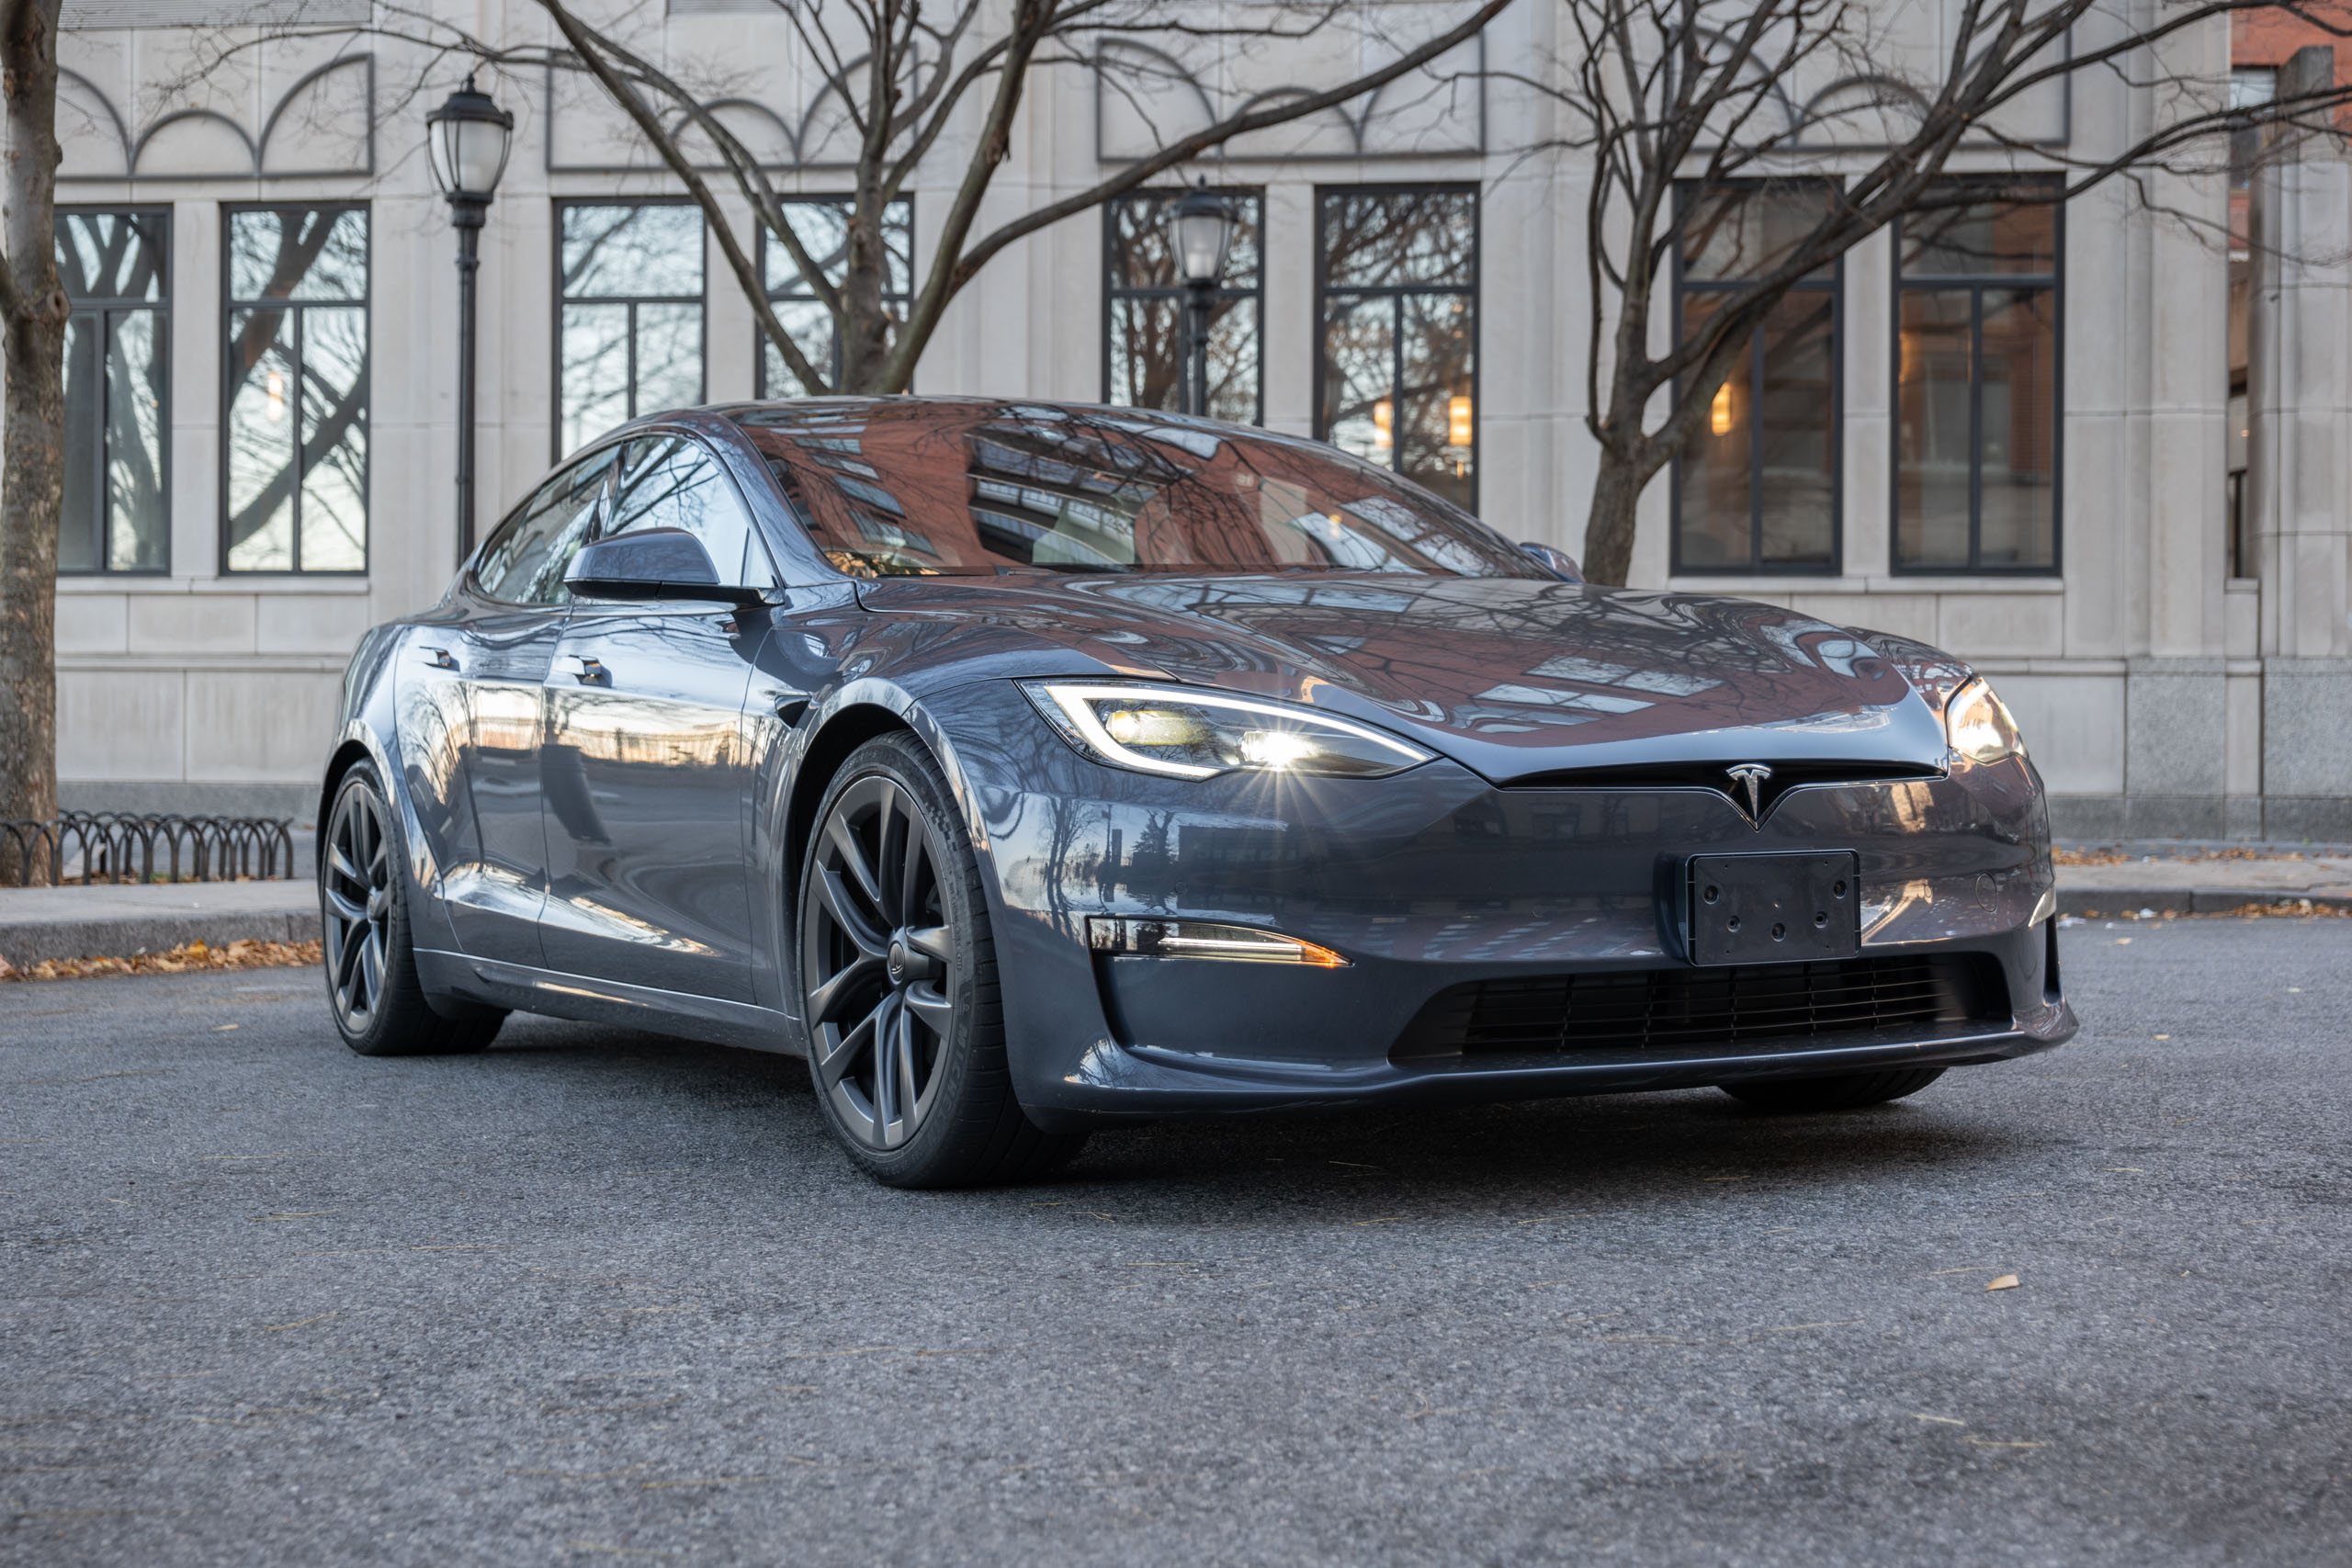 Pourquoi acheter une autre voiture qu'une Tesla s'annonce difficile